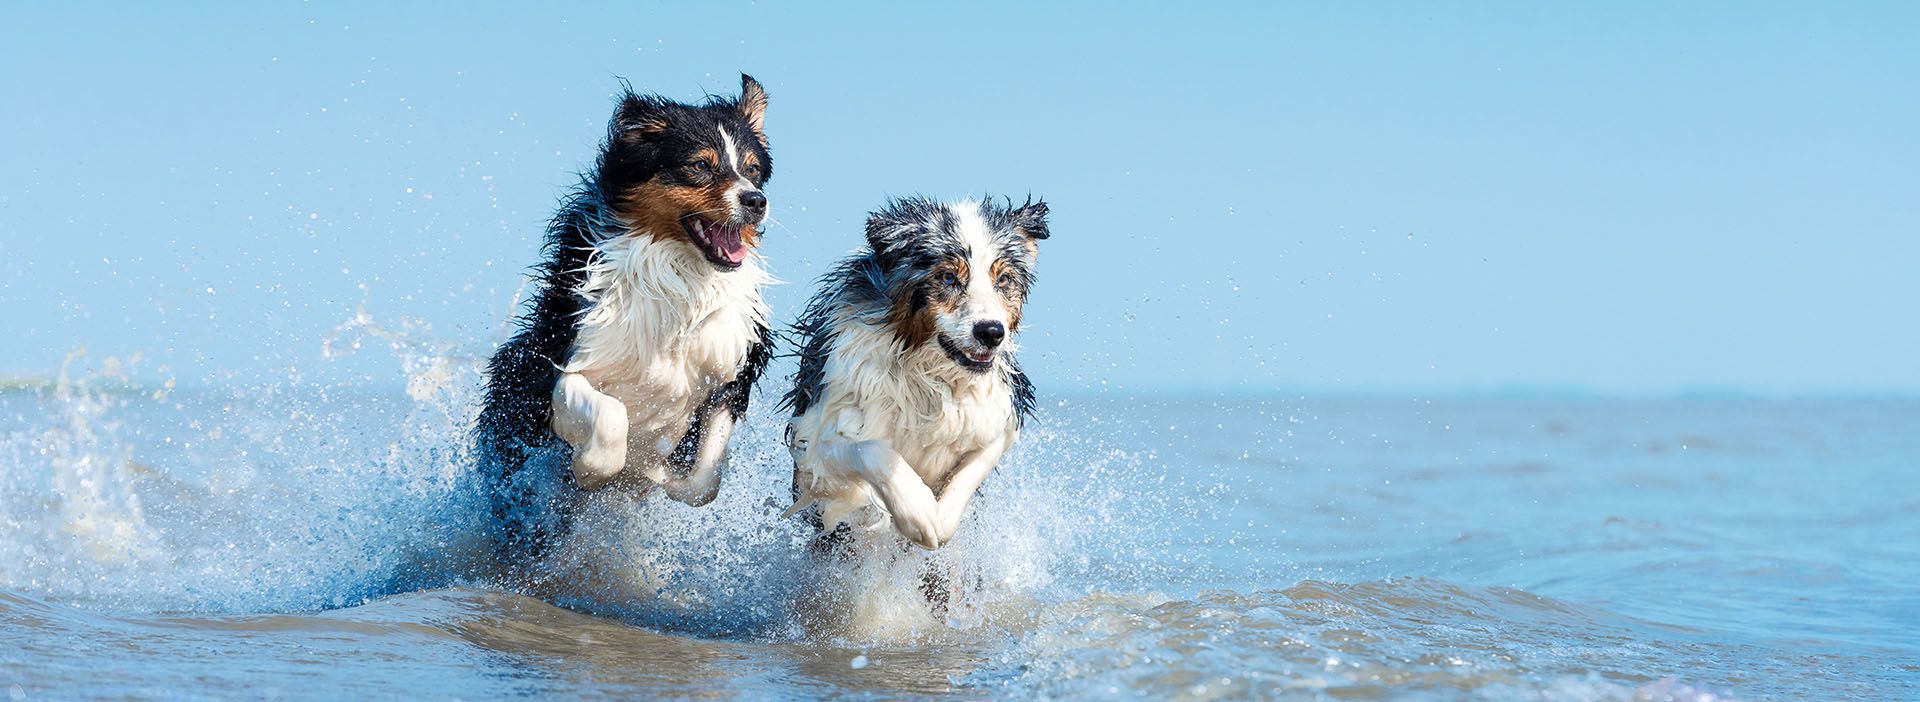 Hunde springen durchs Wasser